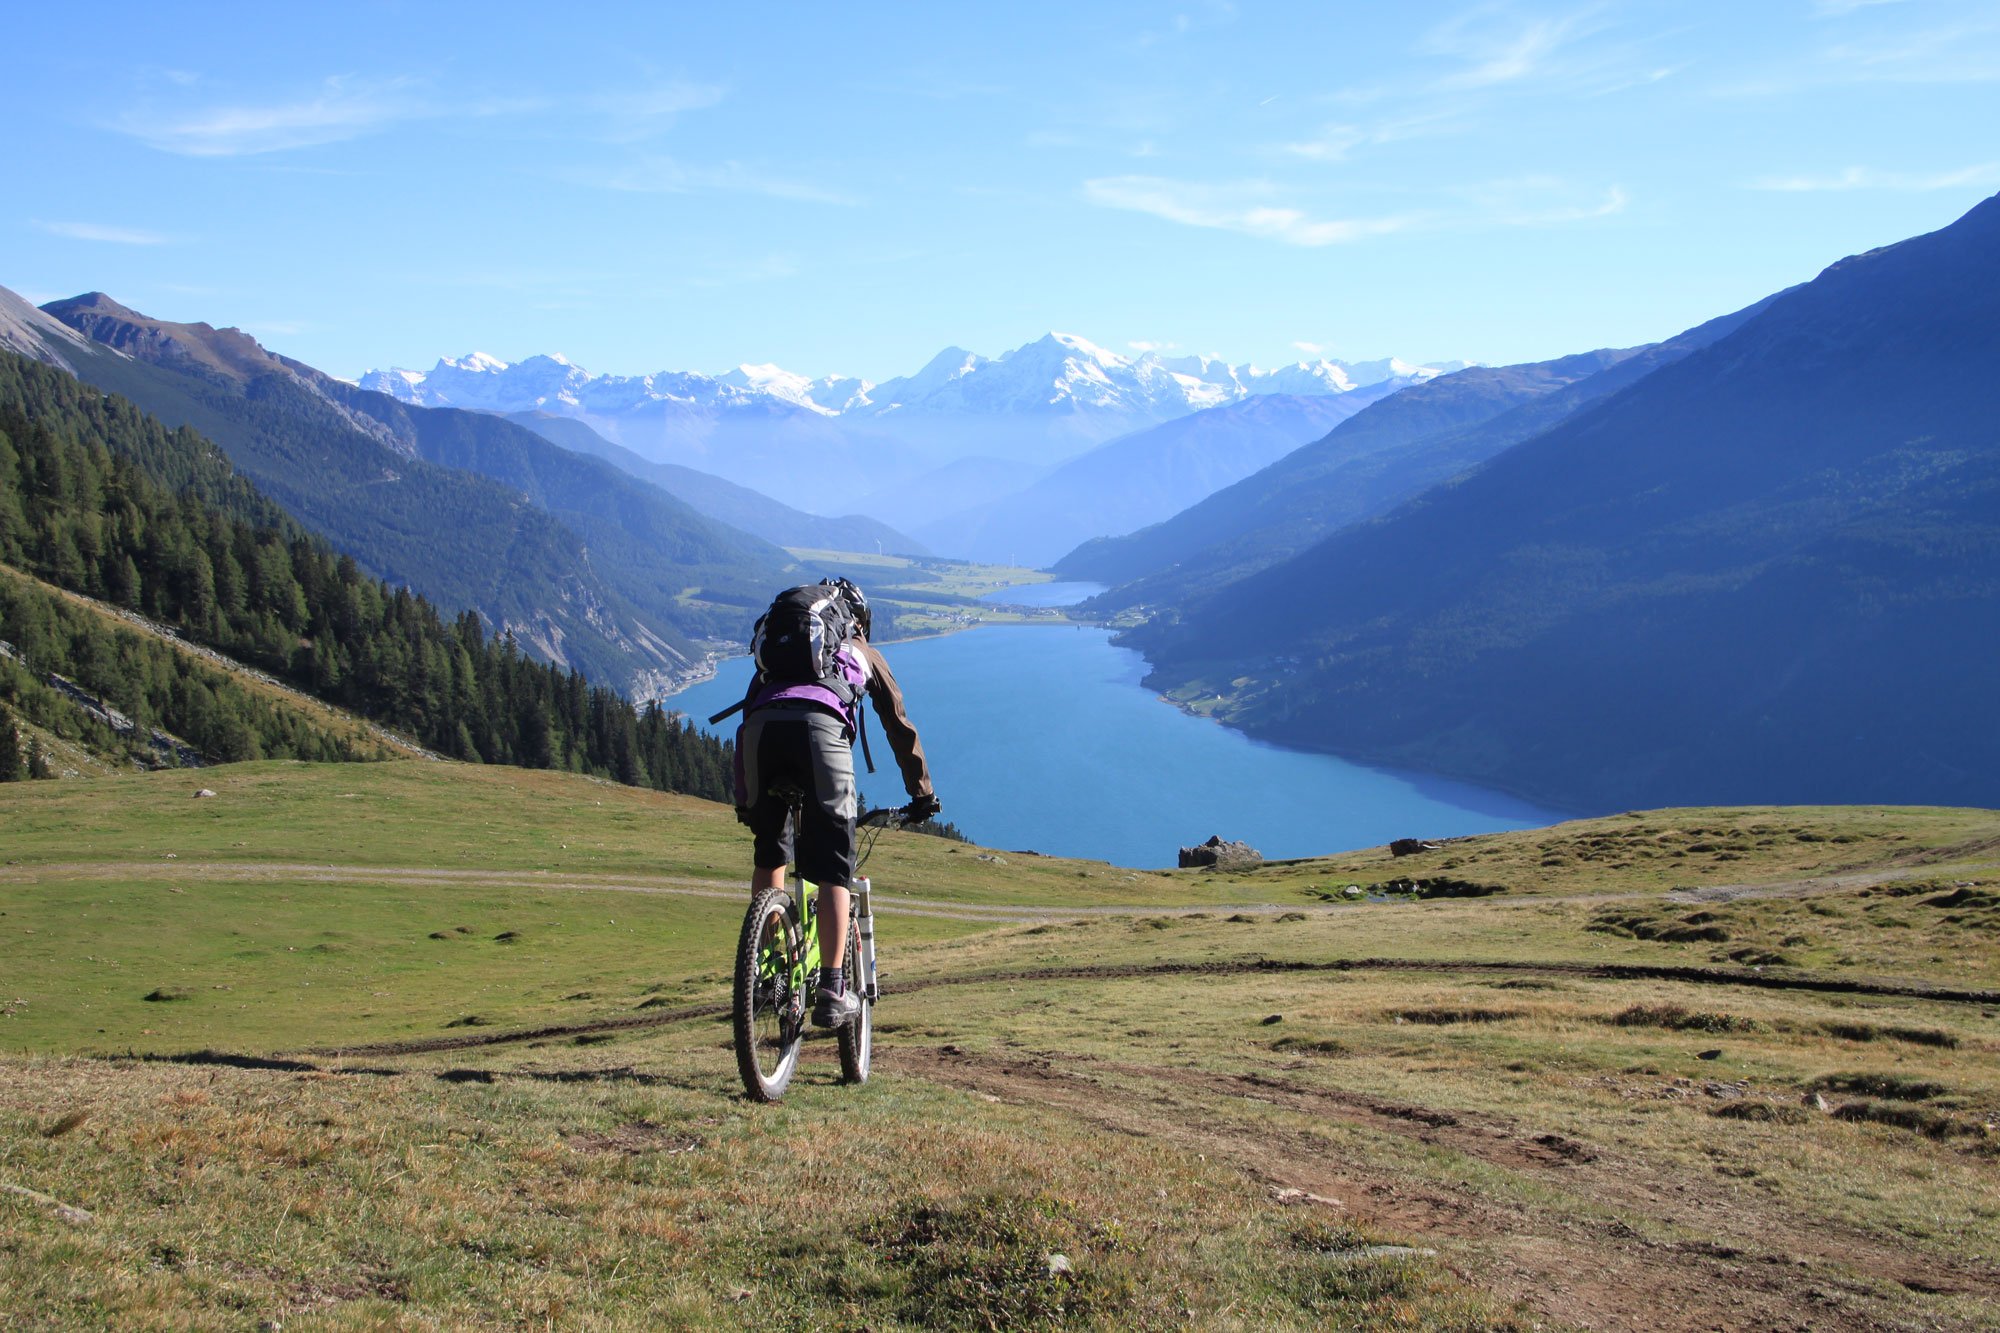 Mountainbike-Urlaub in Südtirol: den Fahrtwind in den italienischen Alpen spüren